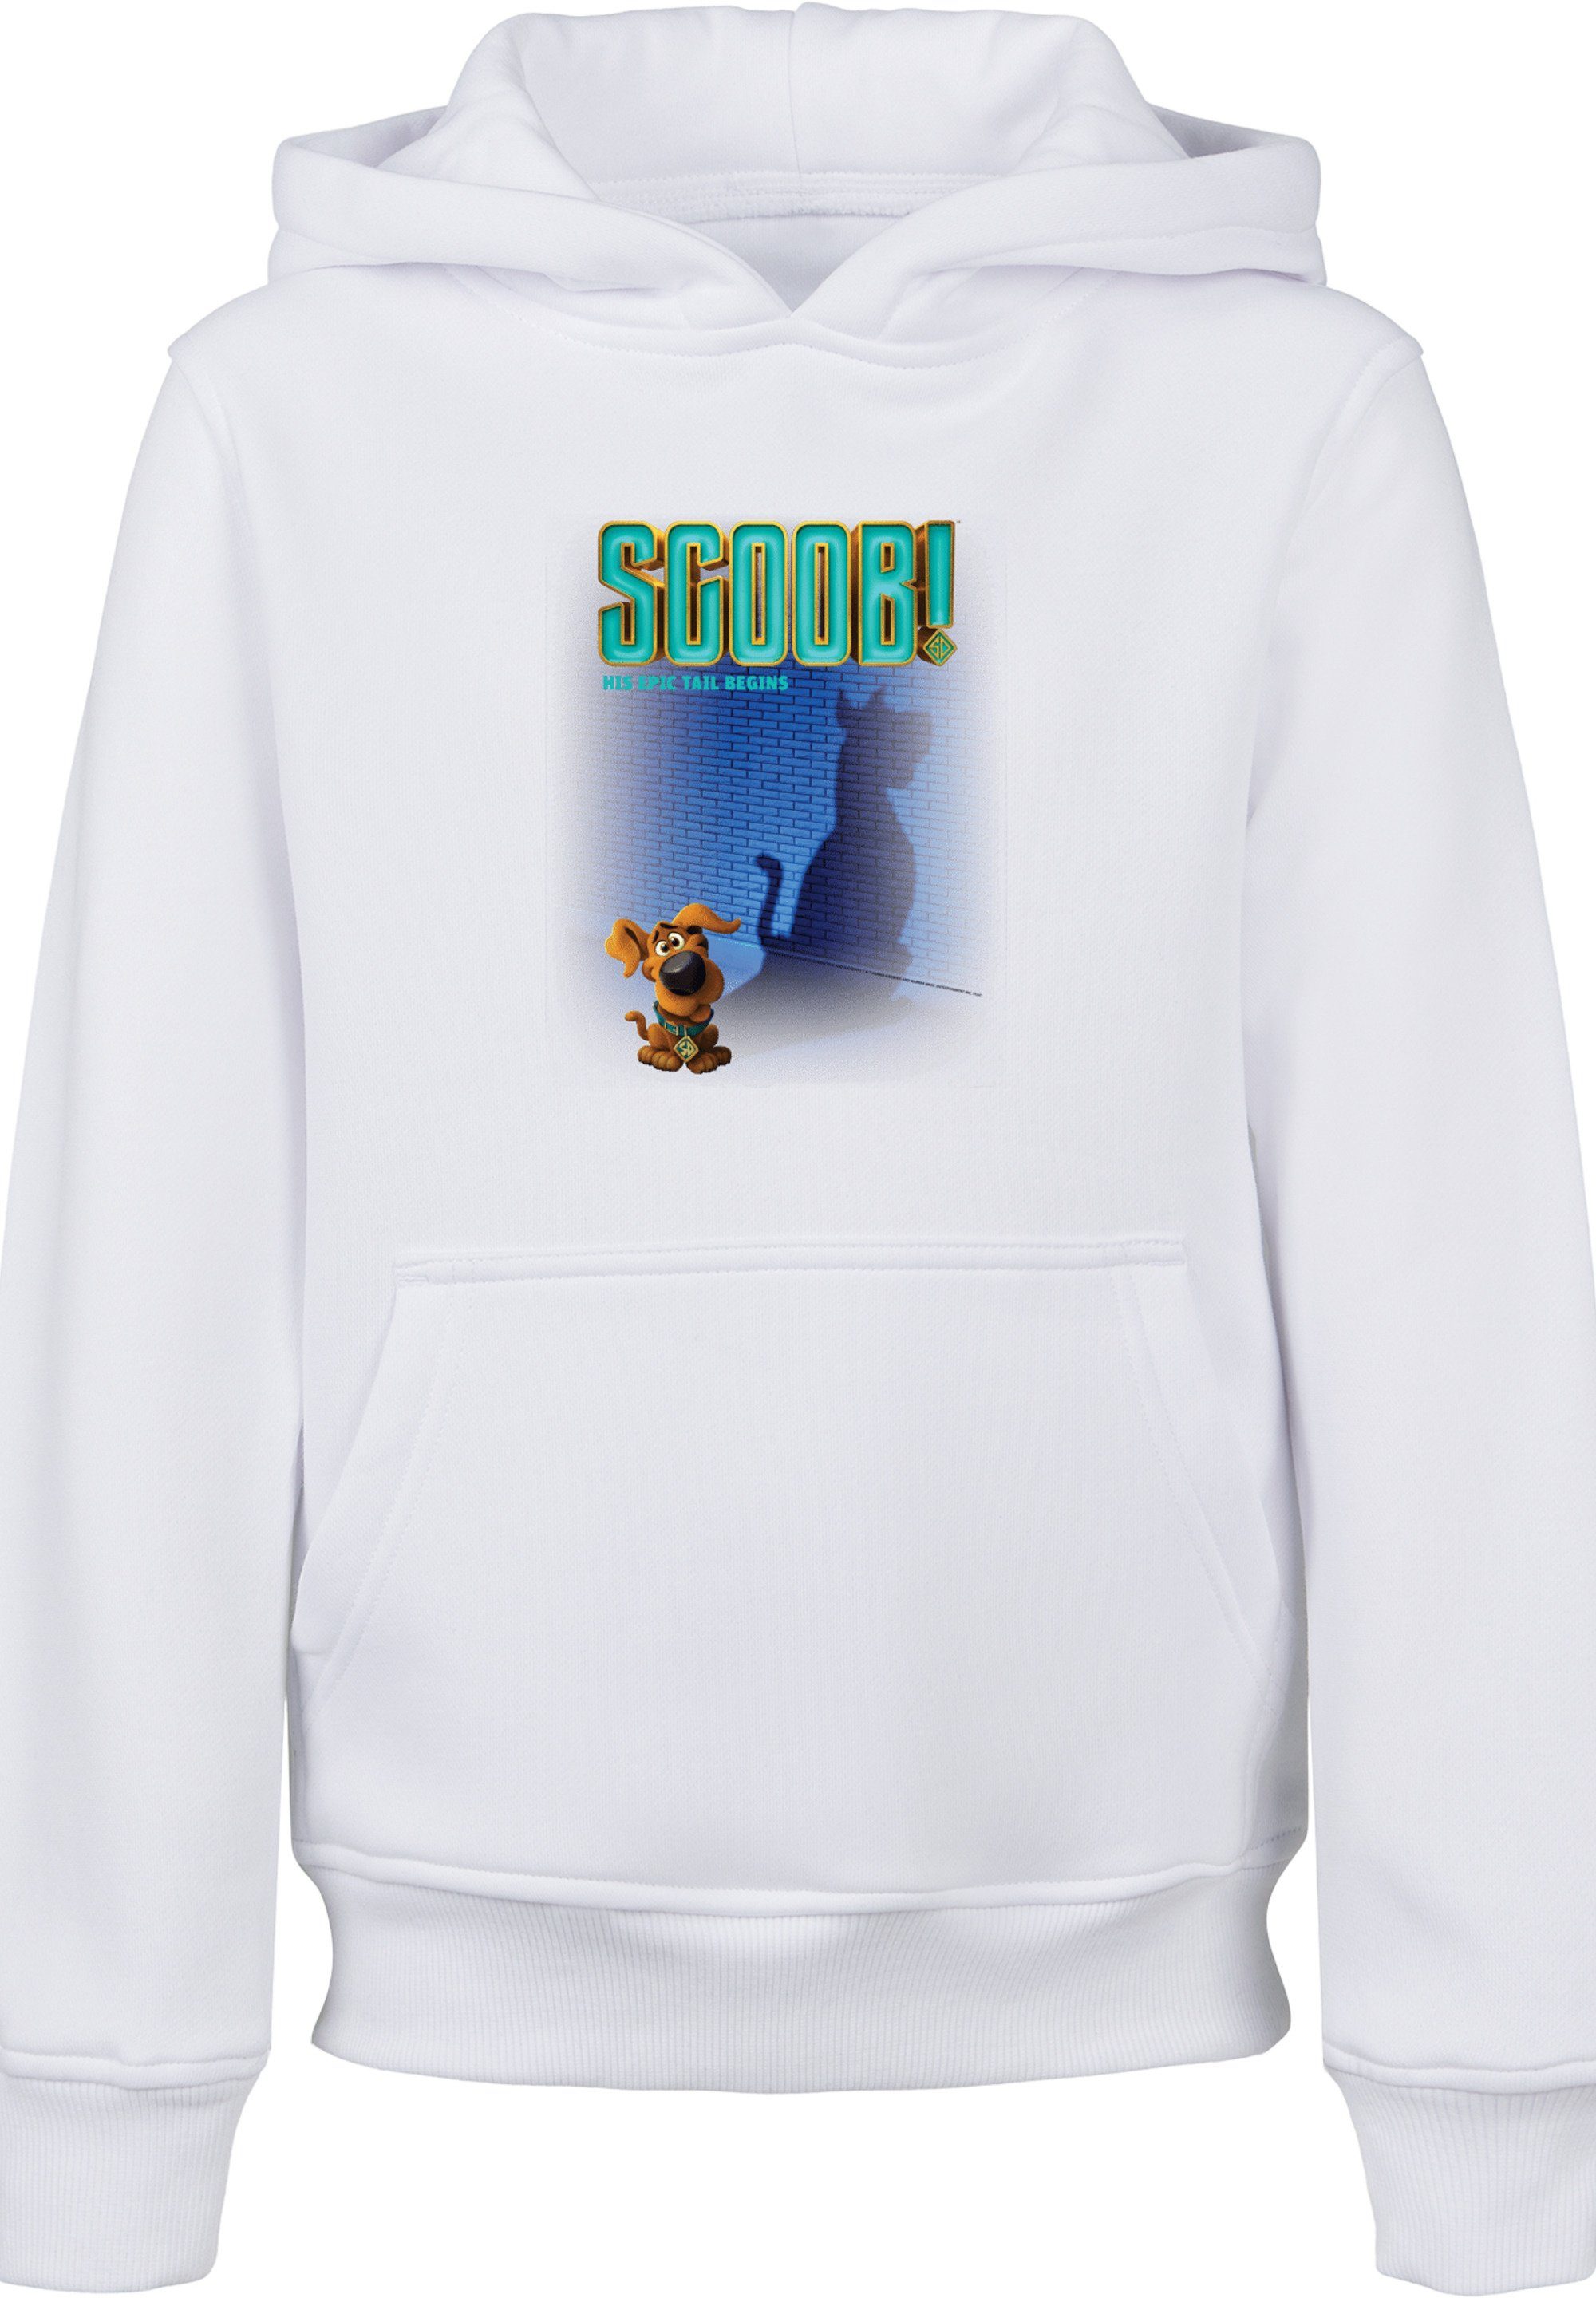 F4NT4STIC Doo Scooby Sweatshirt Merch, Unisex Poster Kinder,Premium Jungen,Mädchen,Bedruckt Movie